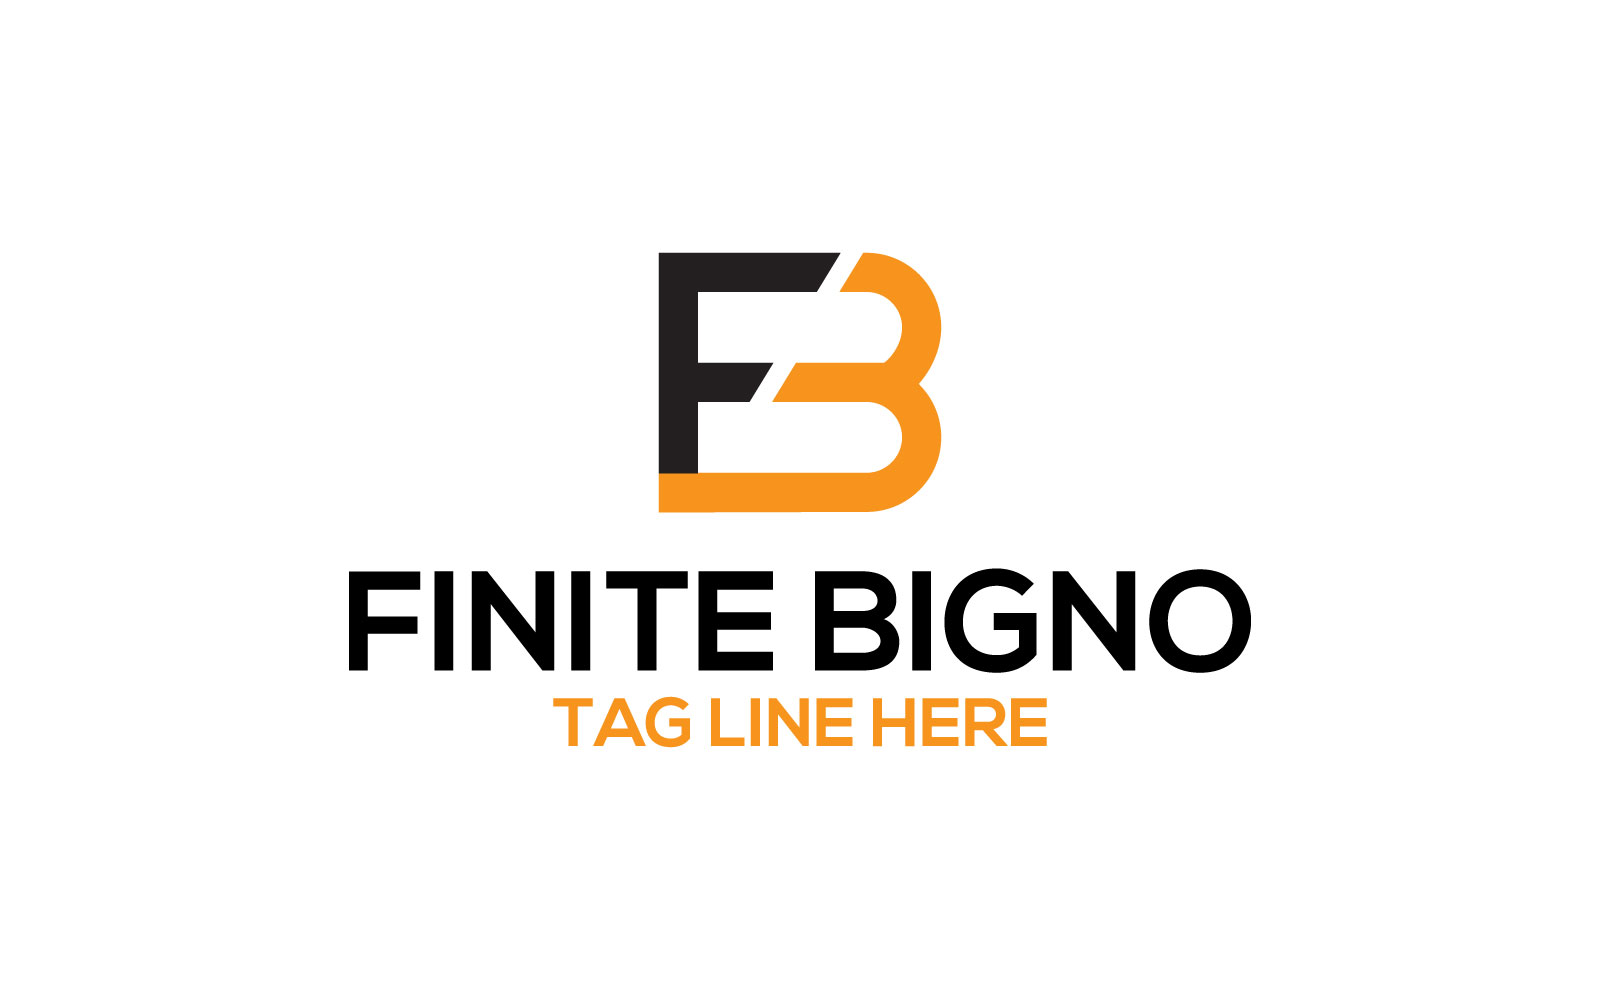 Finite Bigno  FB letter  logo design template